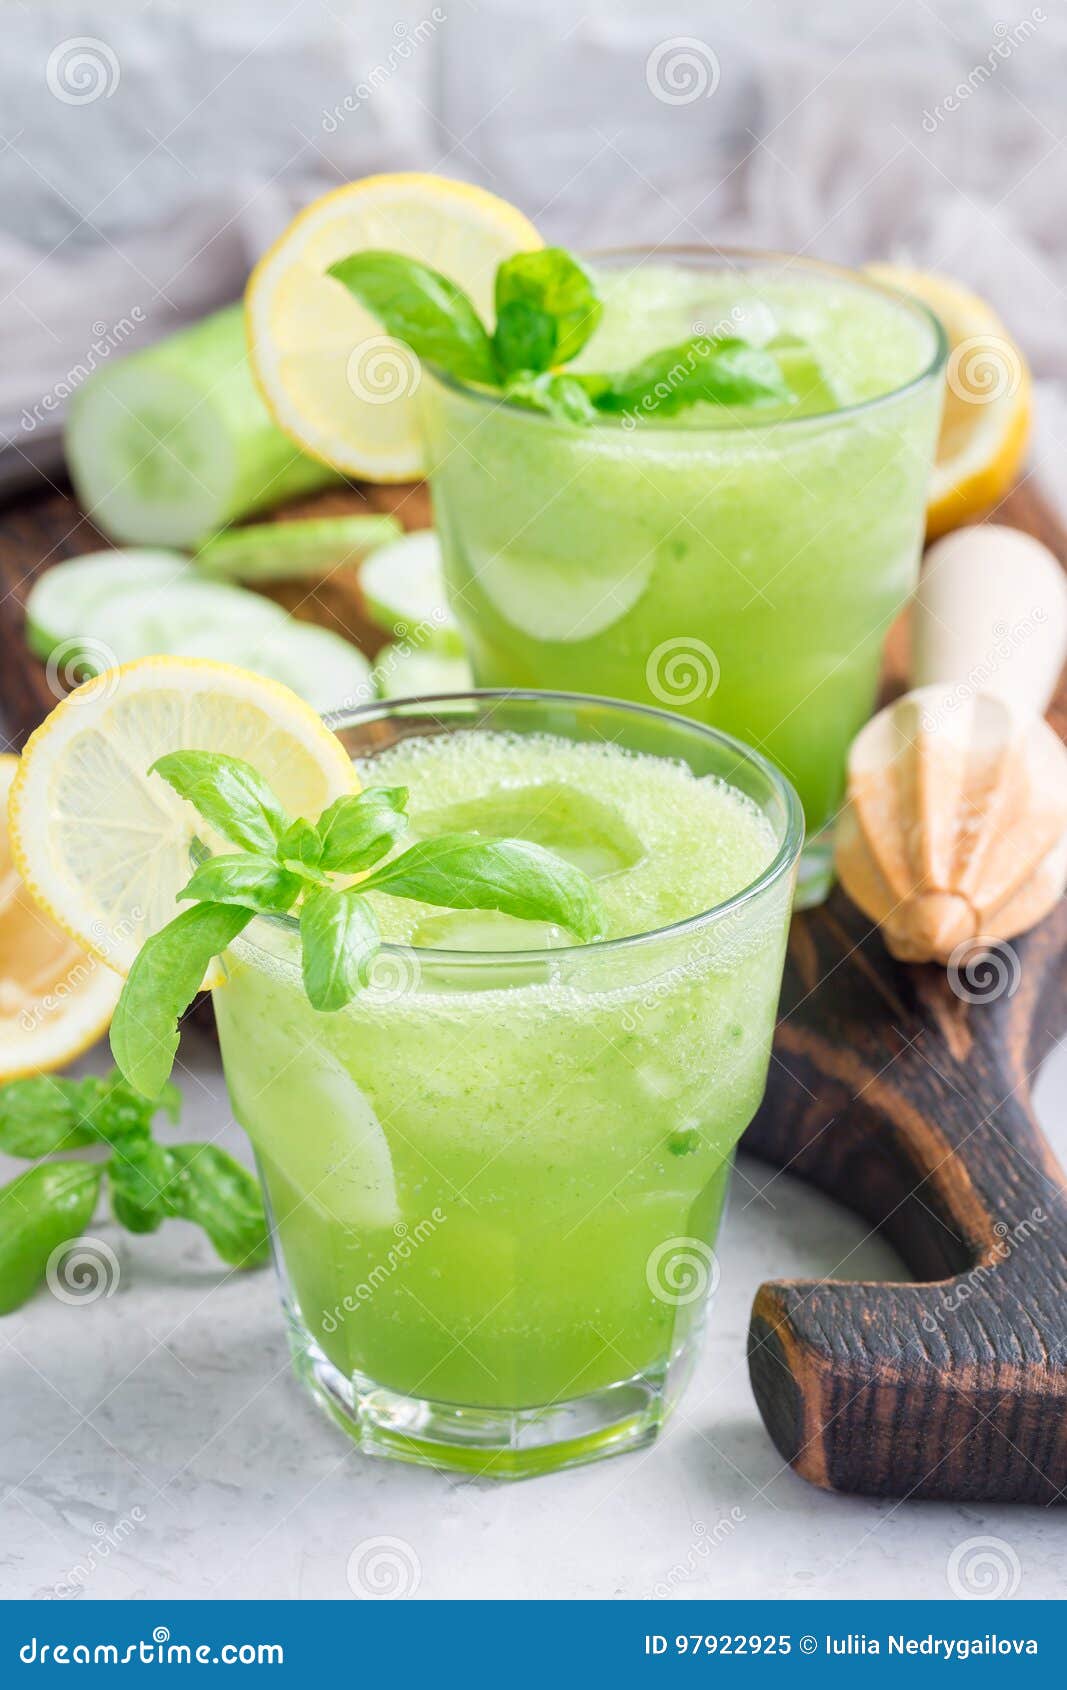 苦瓜黄瓜柠檬汁怎么做_苦瓜黄瓜柠檬汁的做法_豆果美食